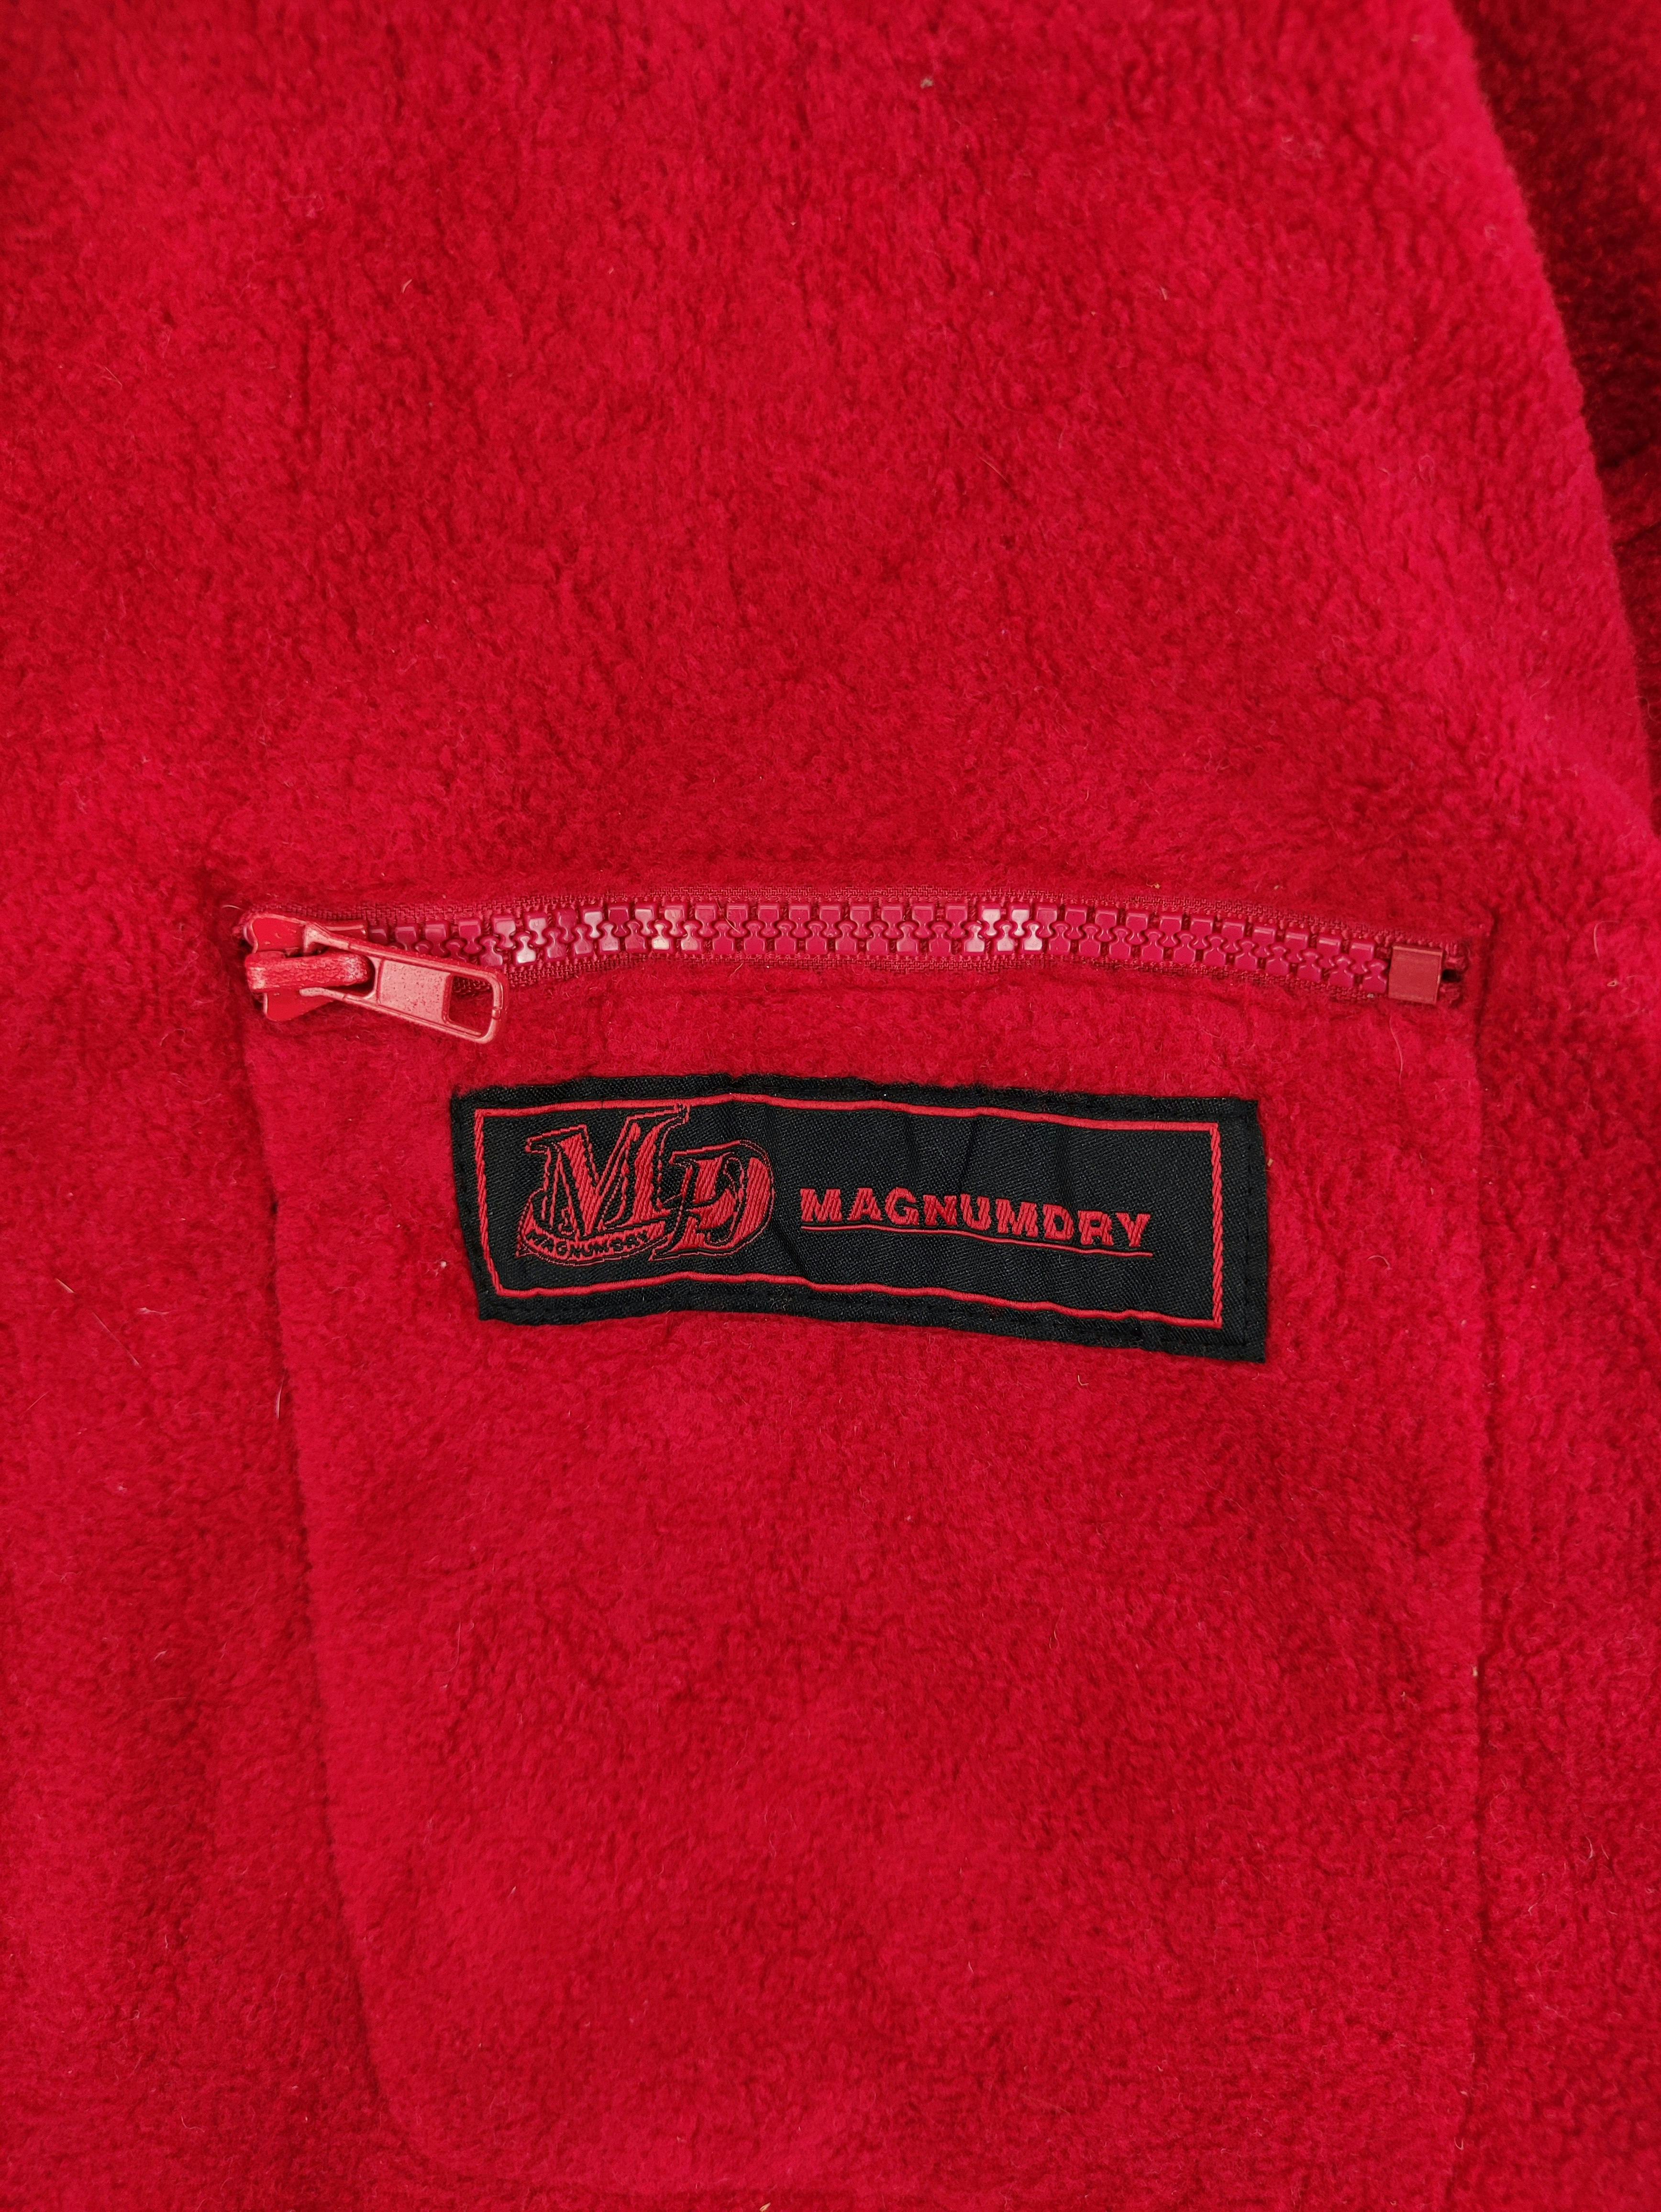 Vintage Magnumdry Fleece Jacket Zipper - 2